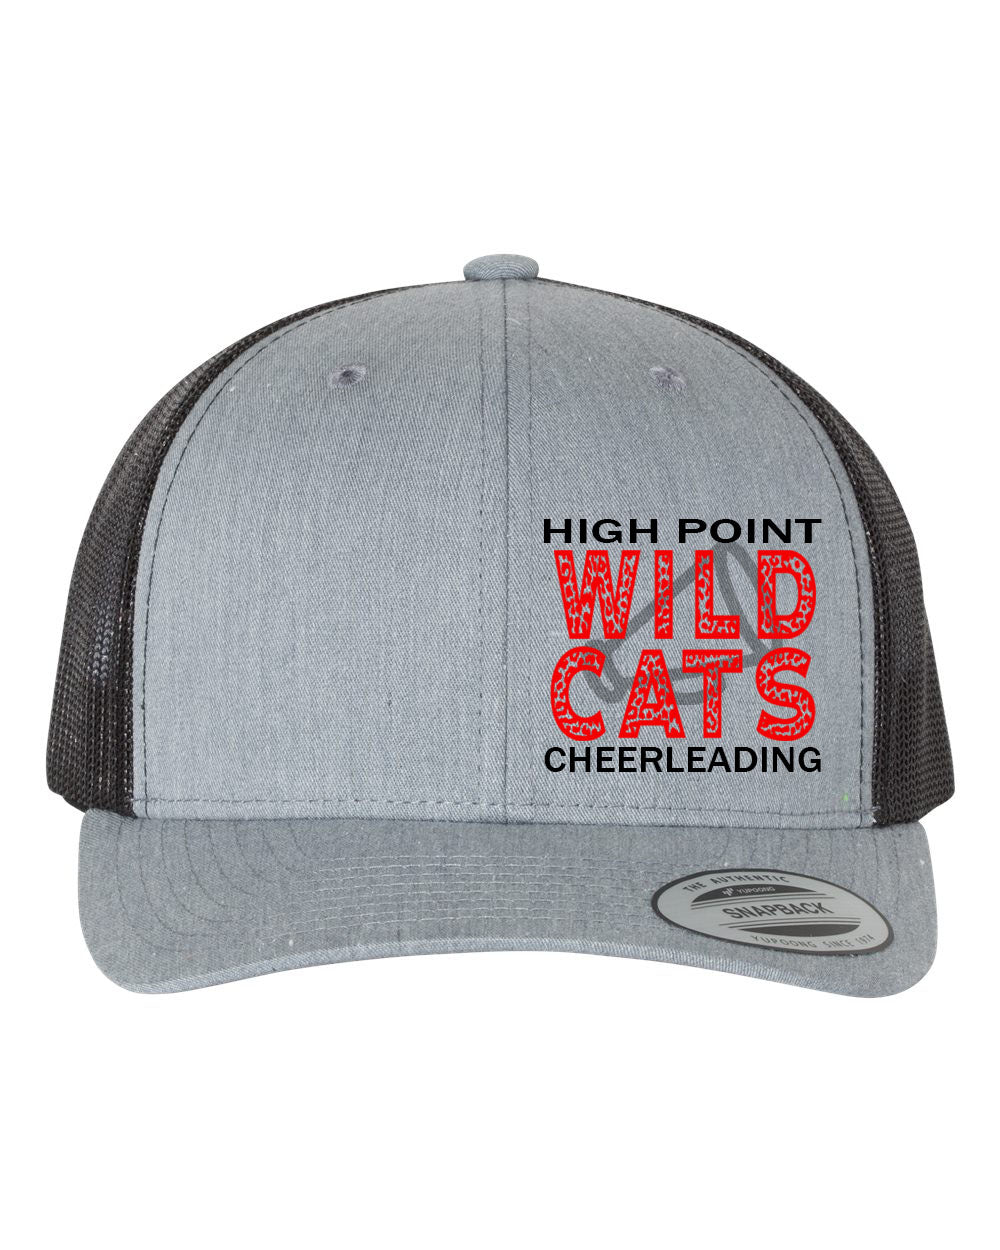 Wildcats Cheer design 1 Trucker Hat